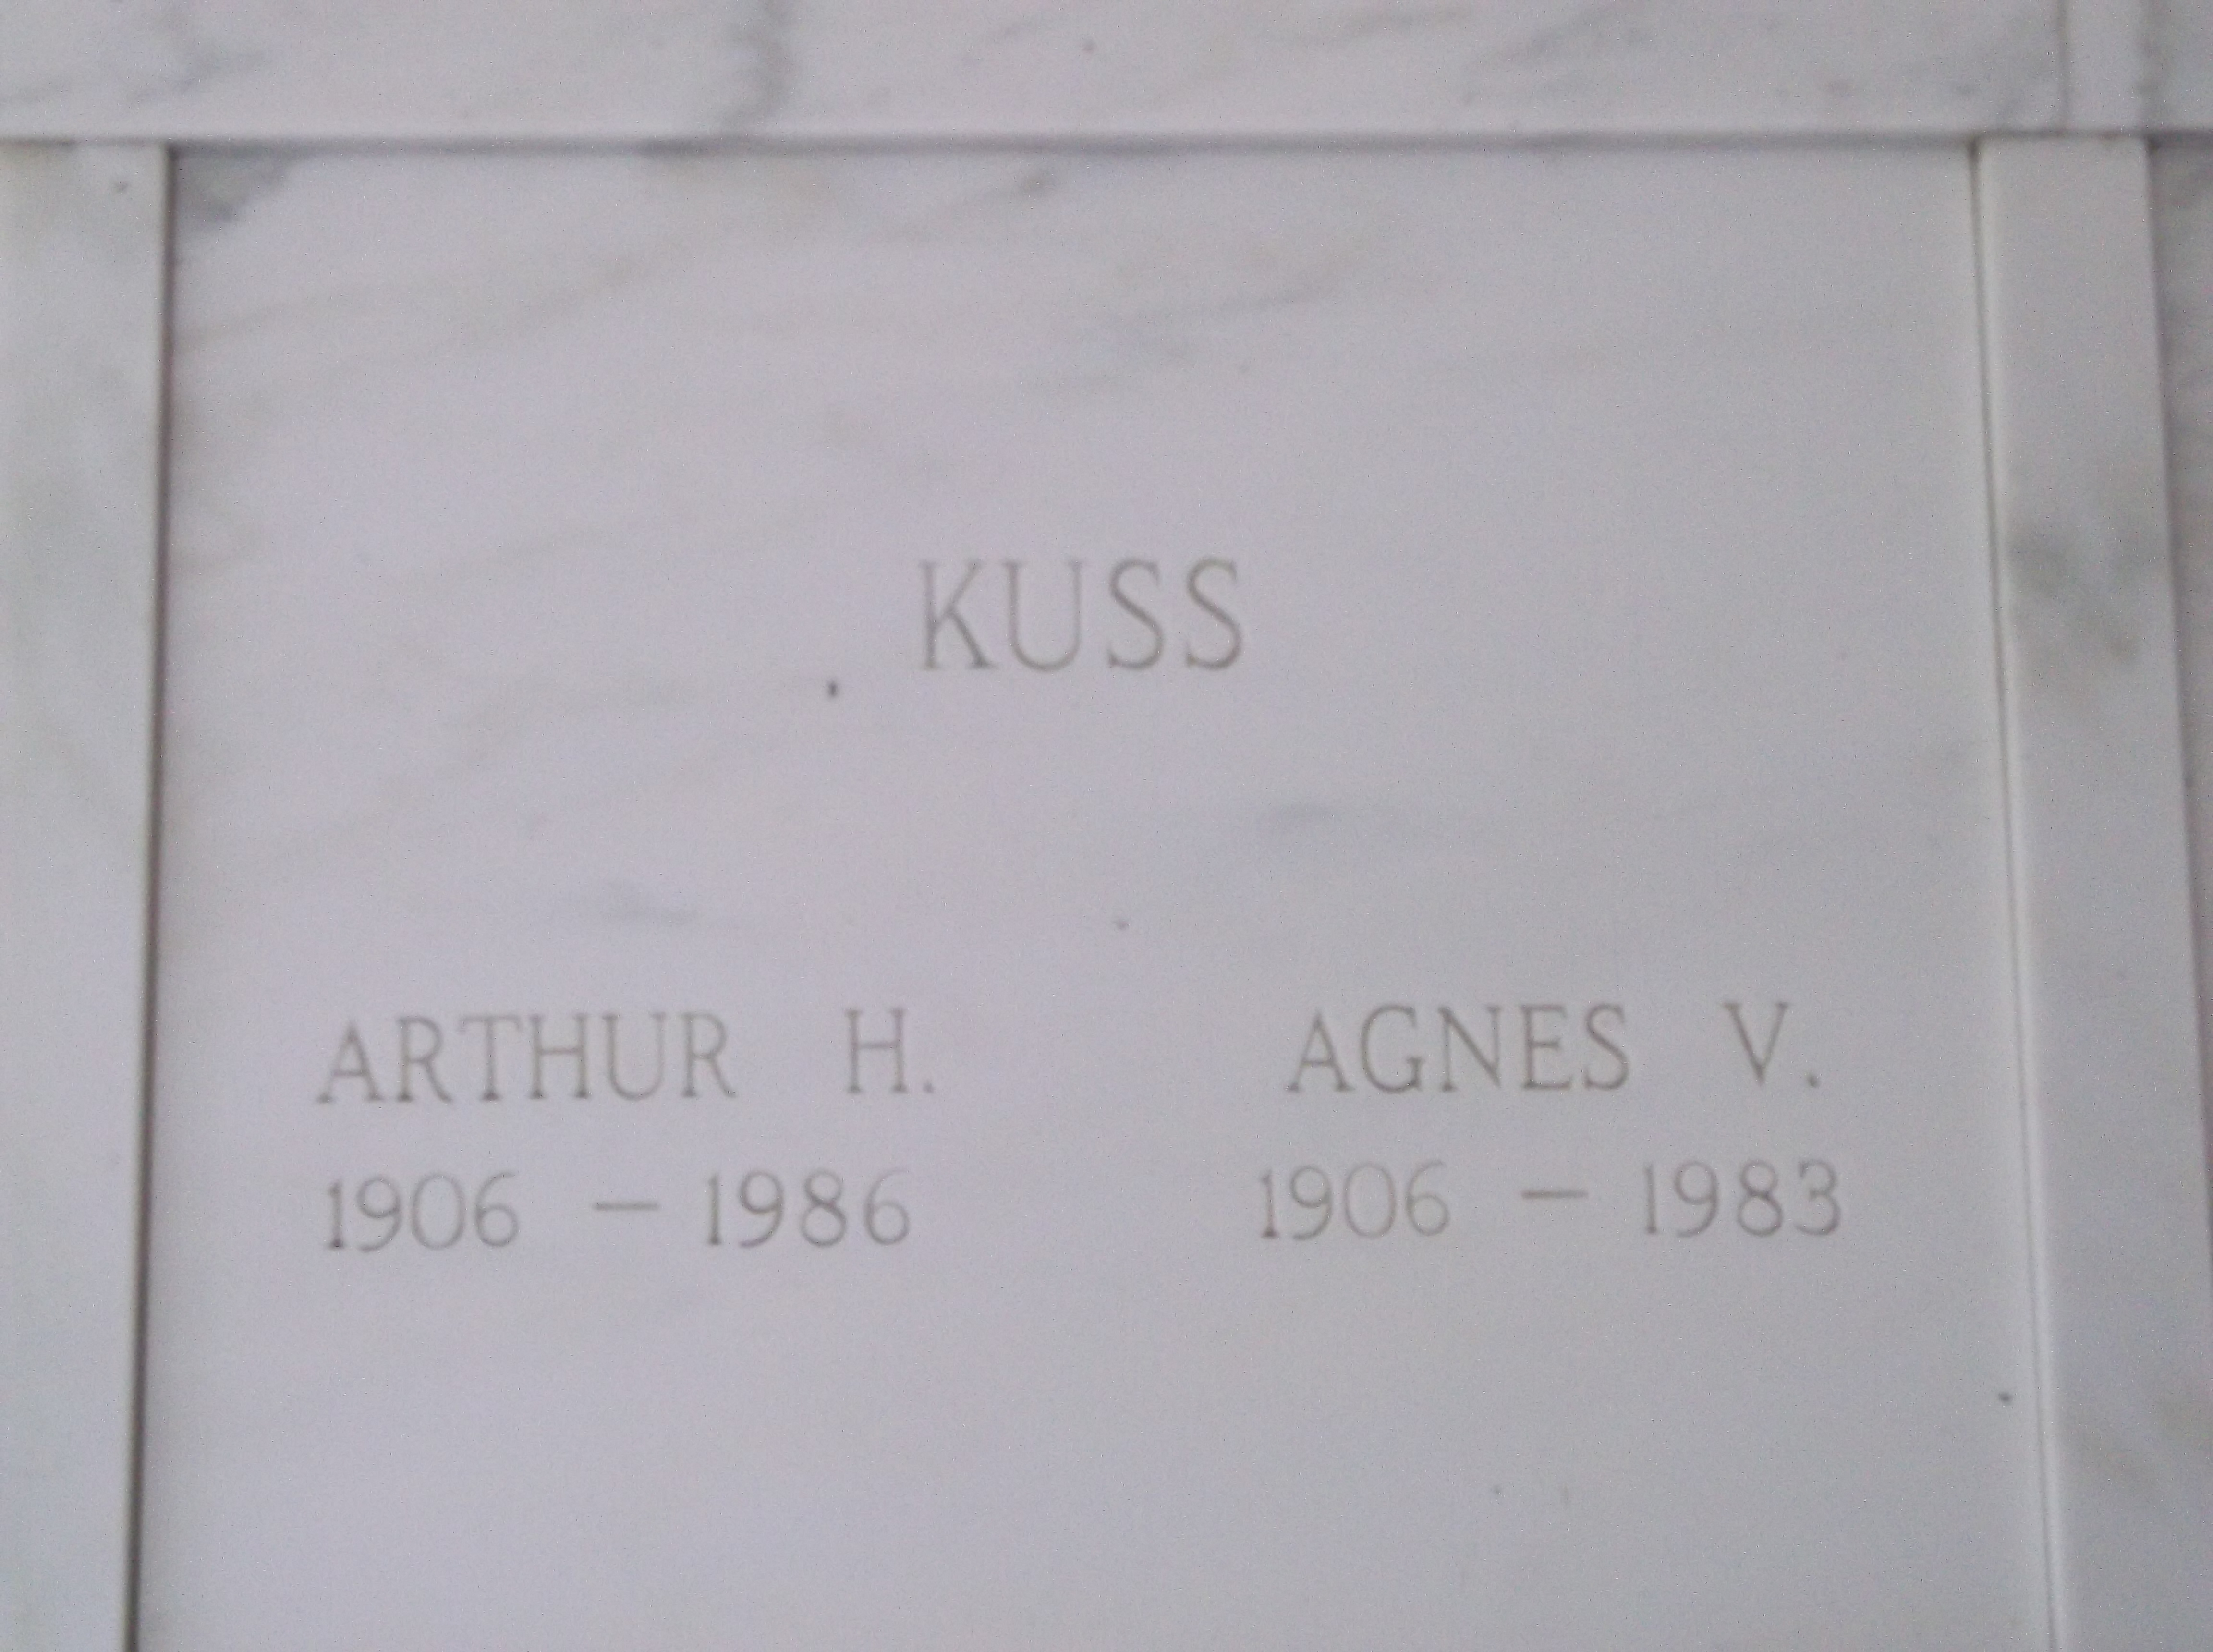 Arthur H Kuss